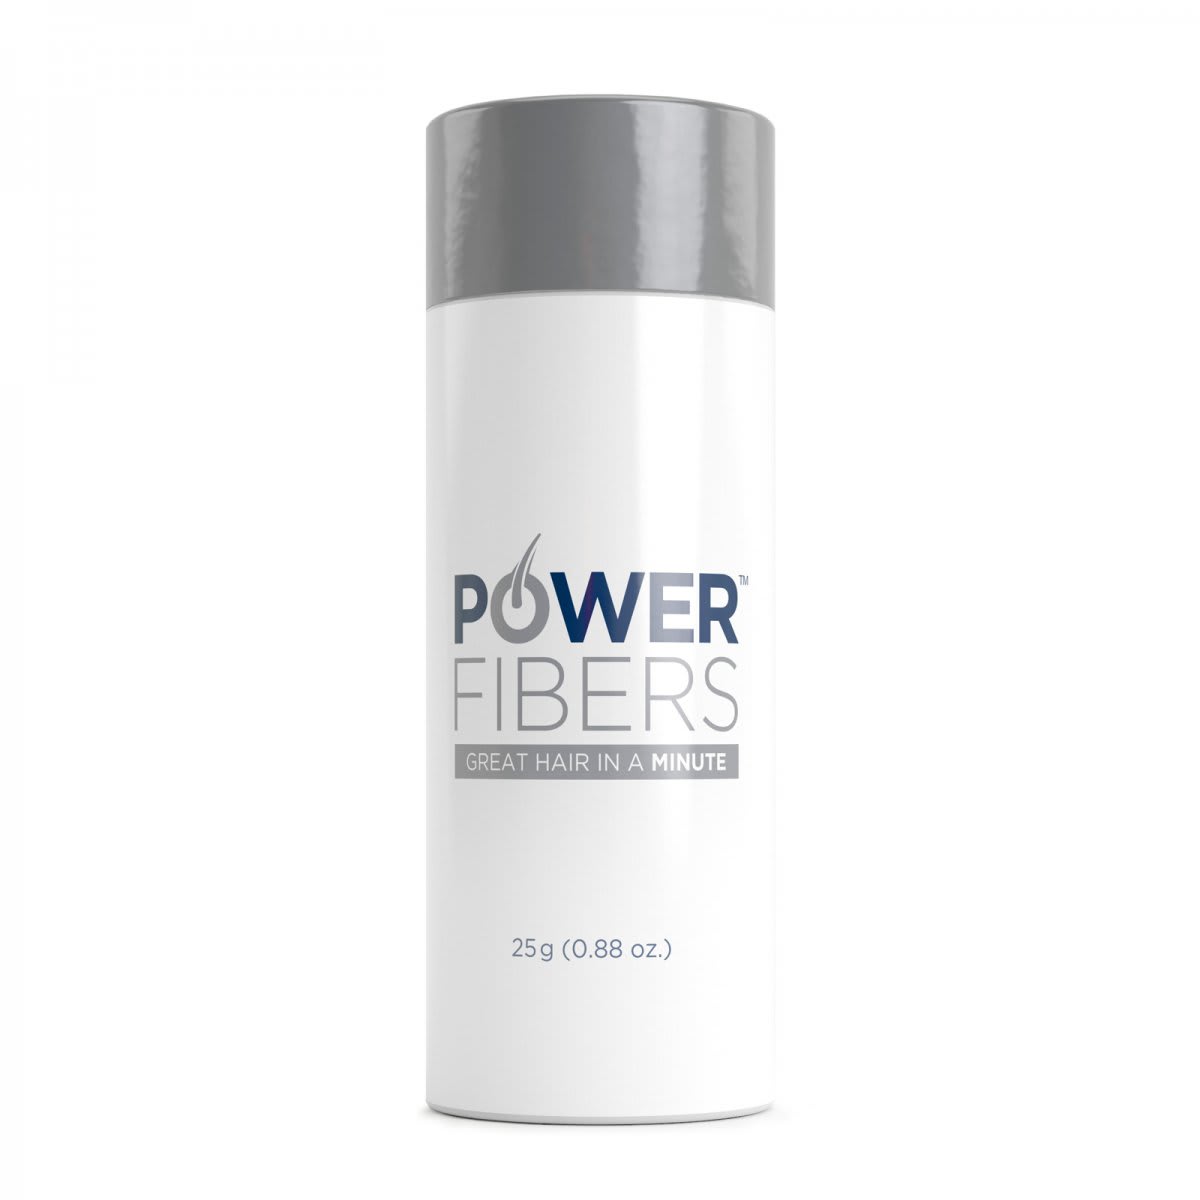 Power Fibers - Tjockt hår eller skägg under minuten!